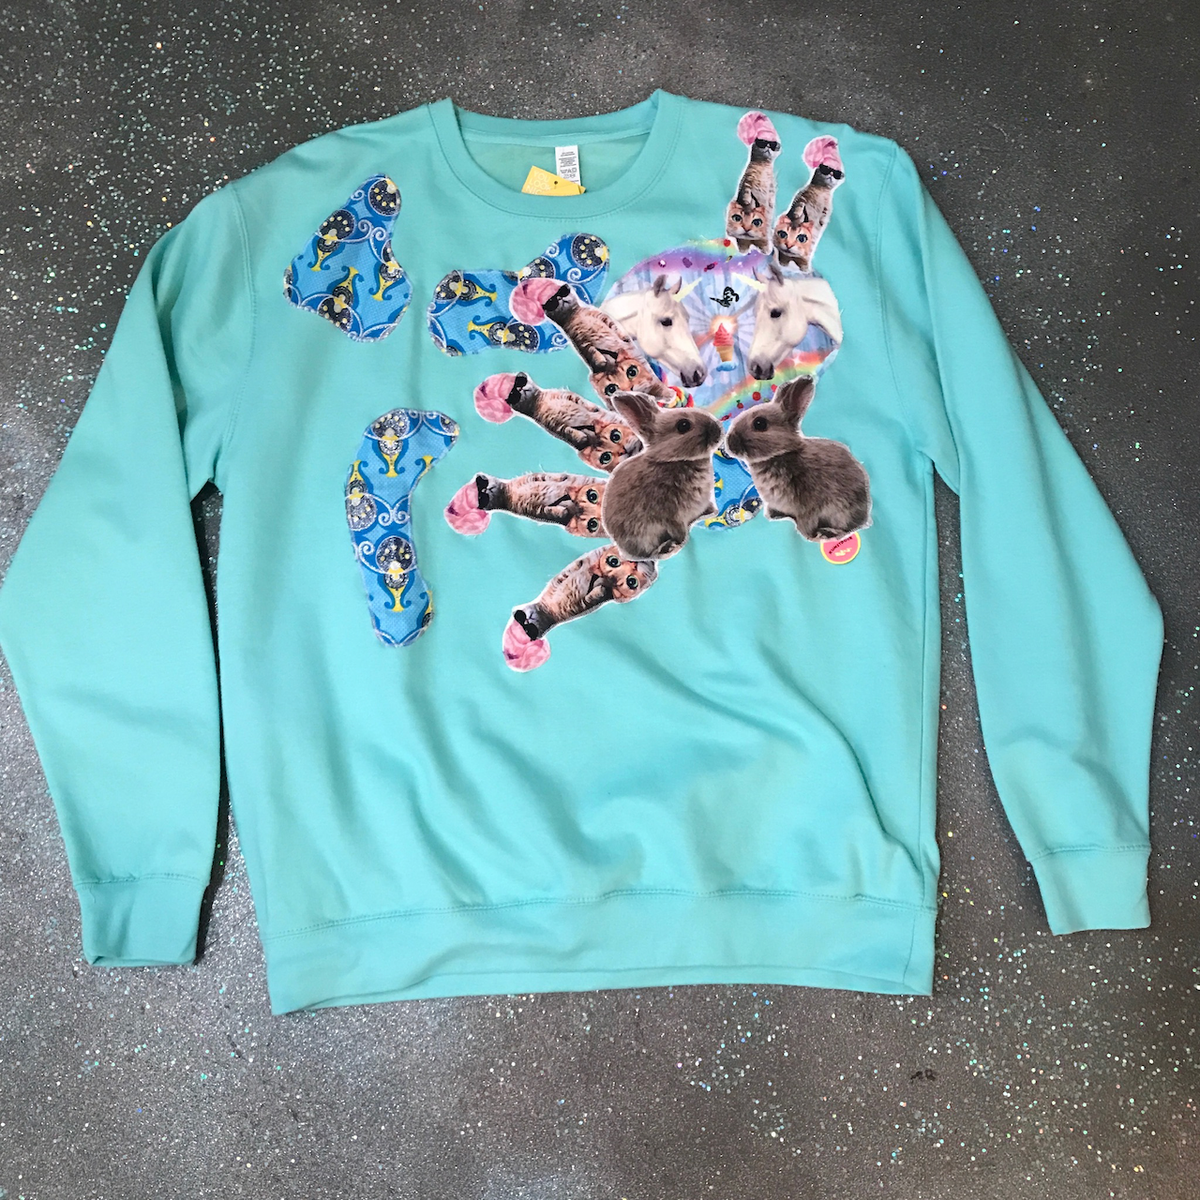 Sweatshirt - 2XL - Aqua with Bunnies, Wig Cats, and Unicorns